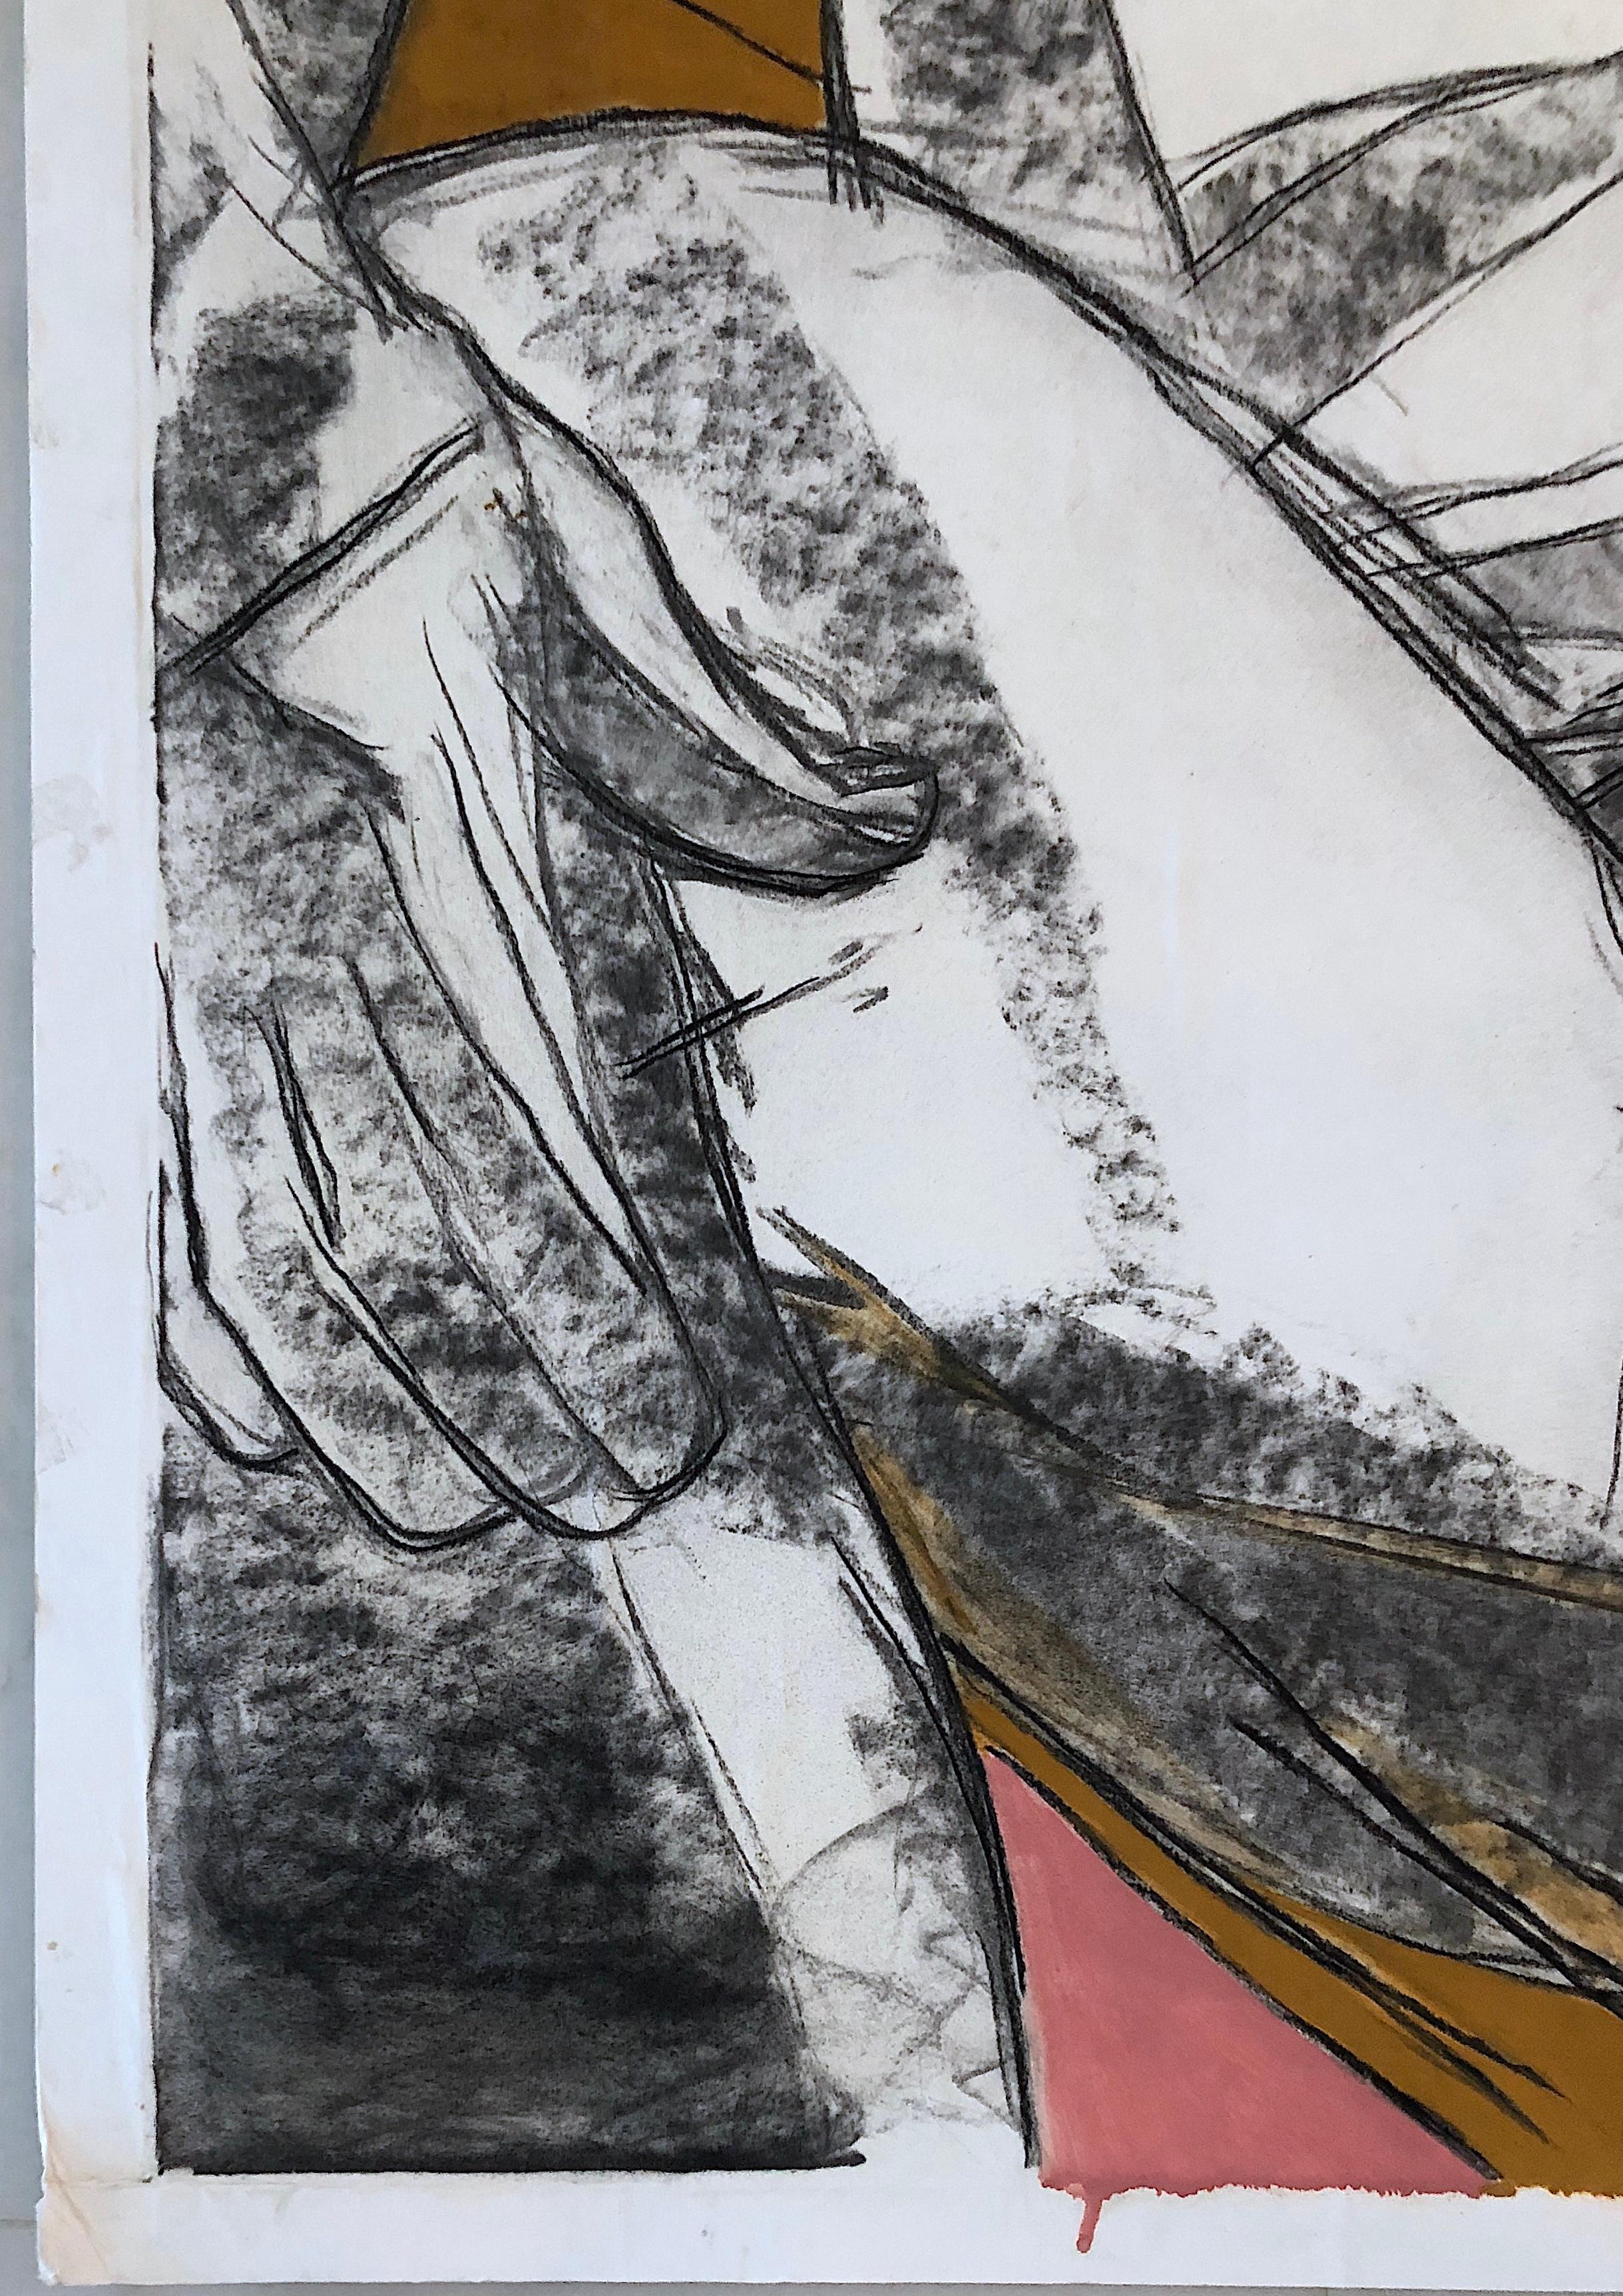 Deux nus, 2016 par Celso Castro-Daza
Unique en son genre 
Pastel, crayon de carbone, encre sur papier d'archives monté sur carton
Taille de l'image : 40.5 H in. x 55.5 in. W 
Monté sur carton sans acide : 41 H x 56 in. W

Le dessin sur papier est